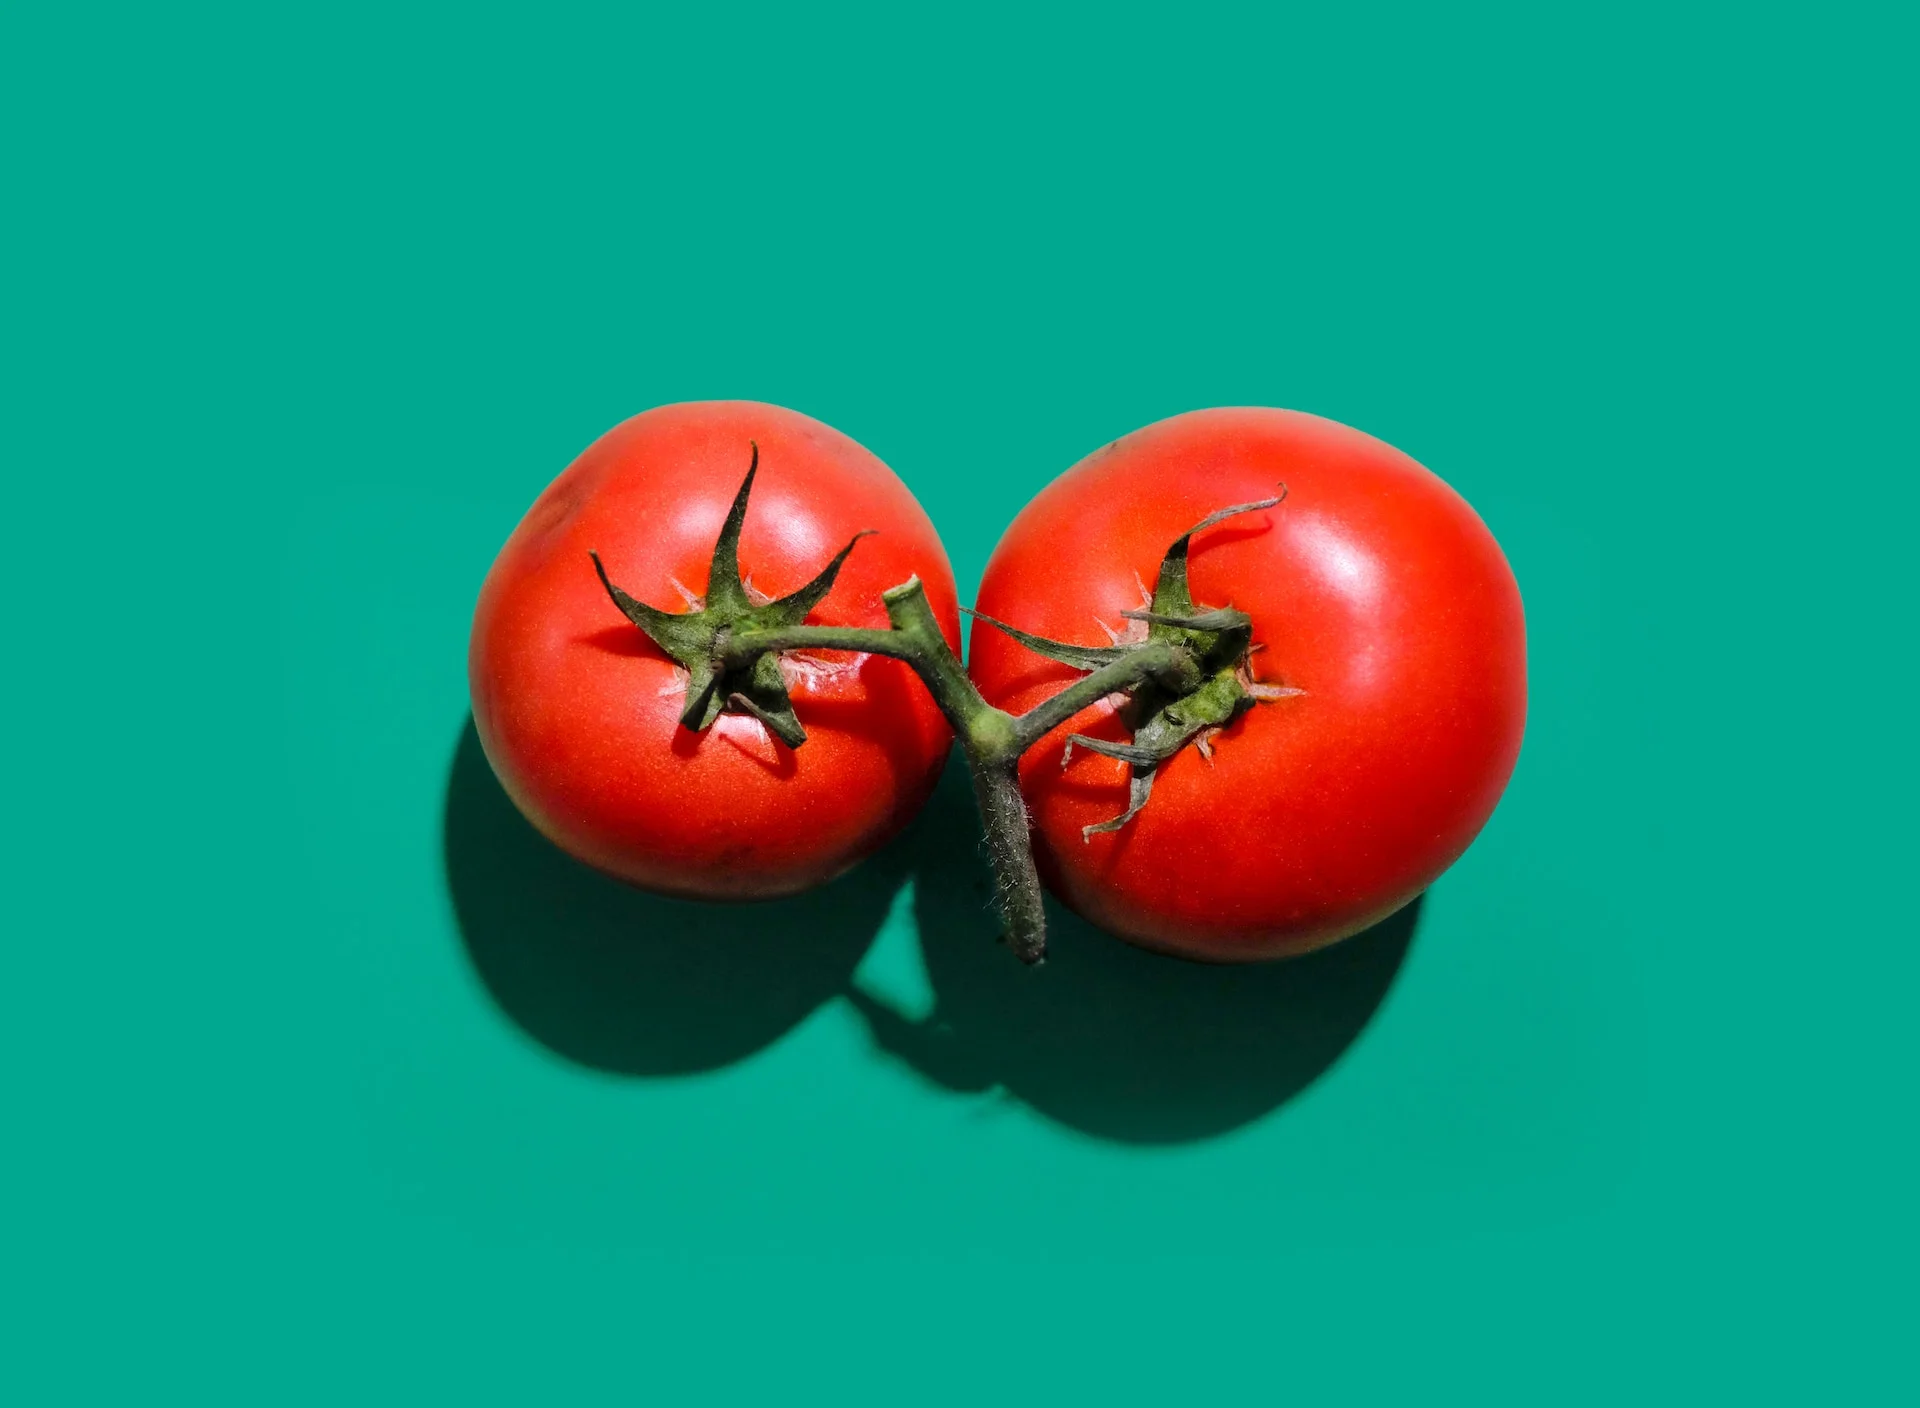 manfaat tomat bagi tubuh